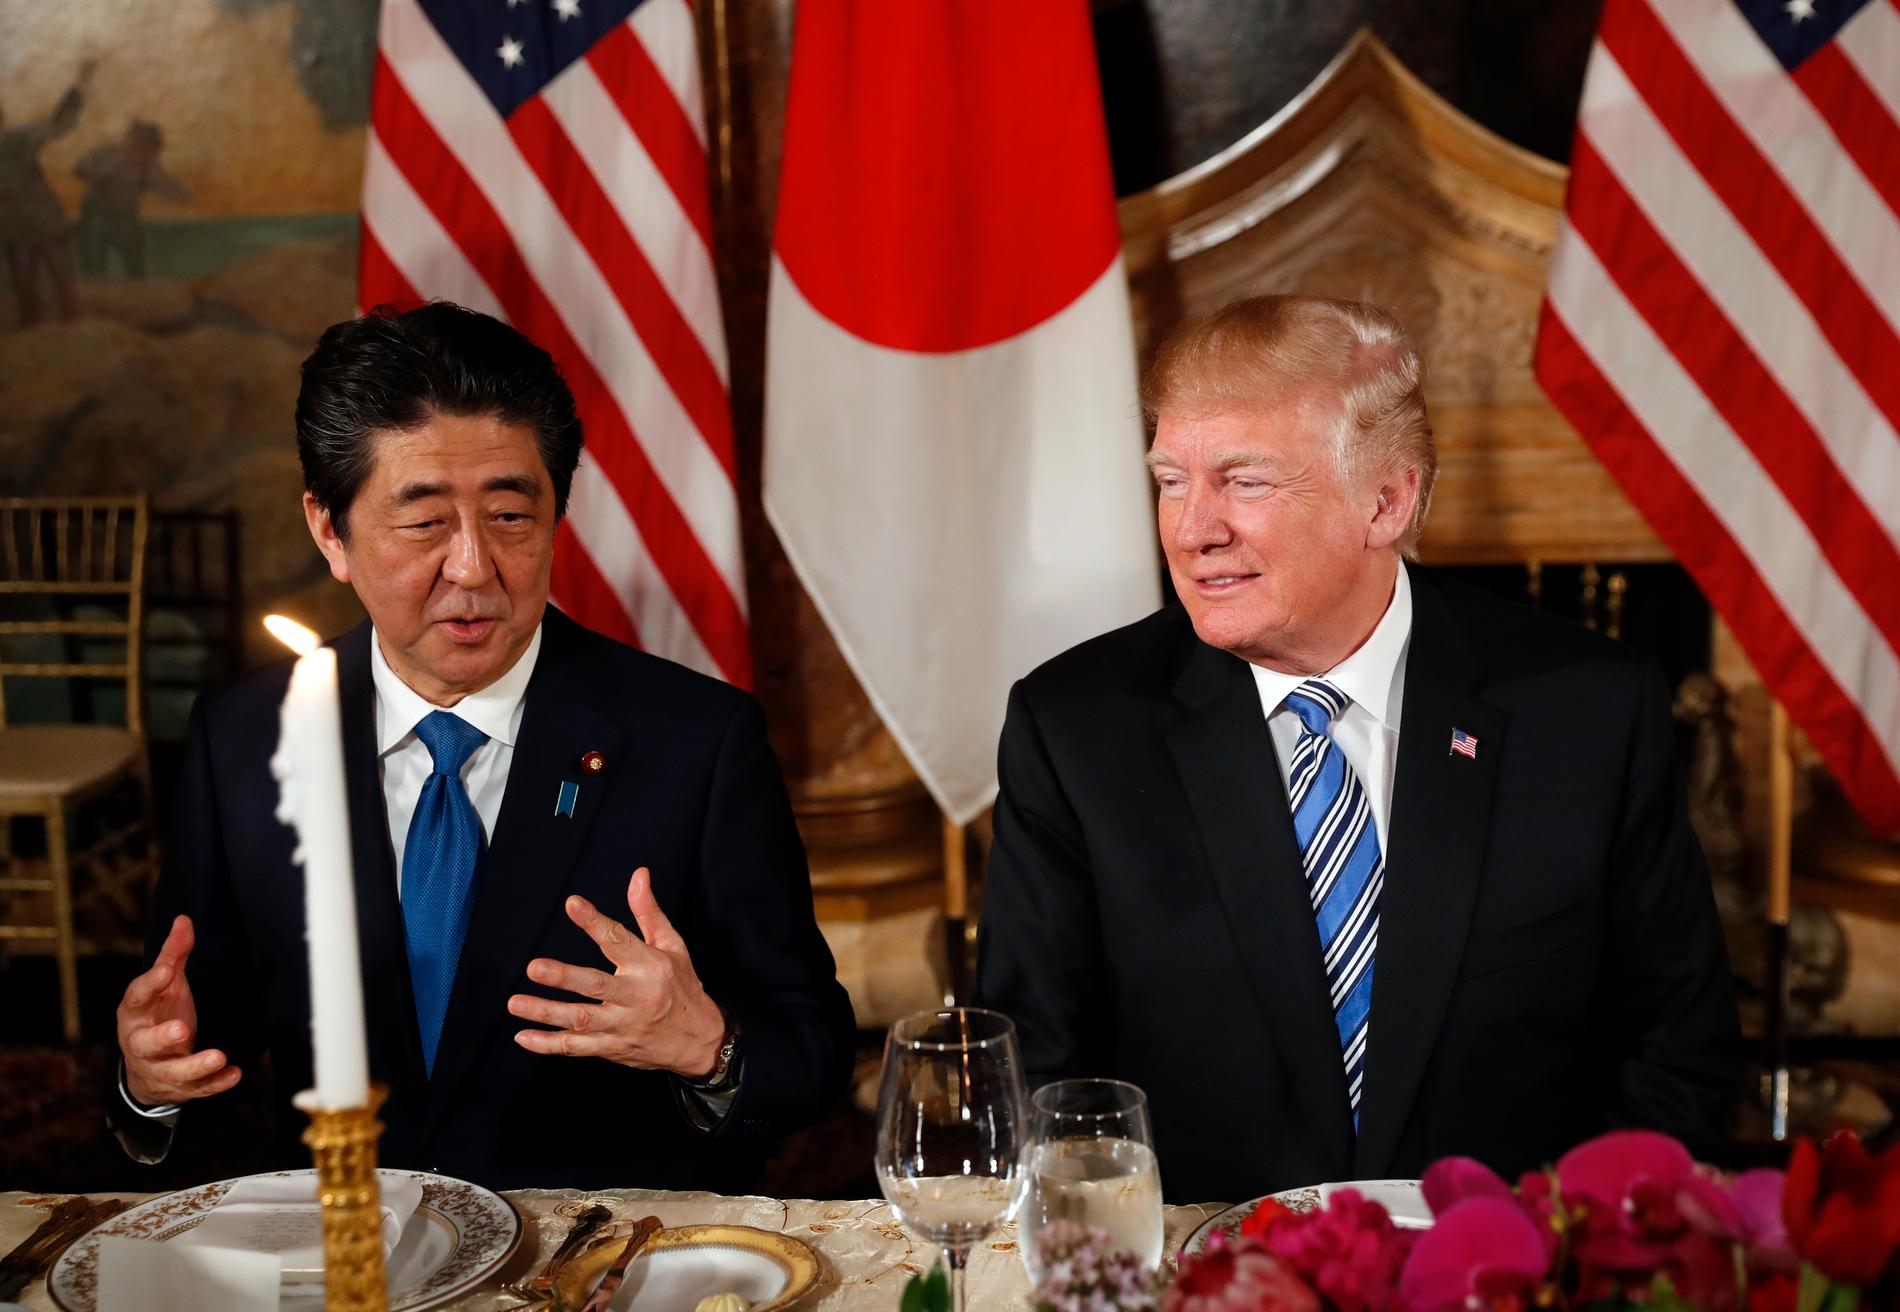 President Donald Trump och premiärminister Shinzo Abe vid en middag i april. Snart möts de igen för att prata om Nordkorea. Arkivbild.